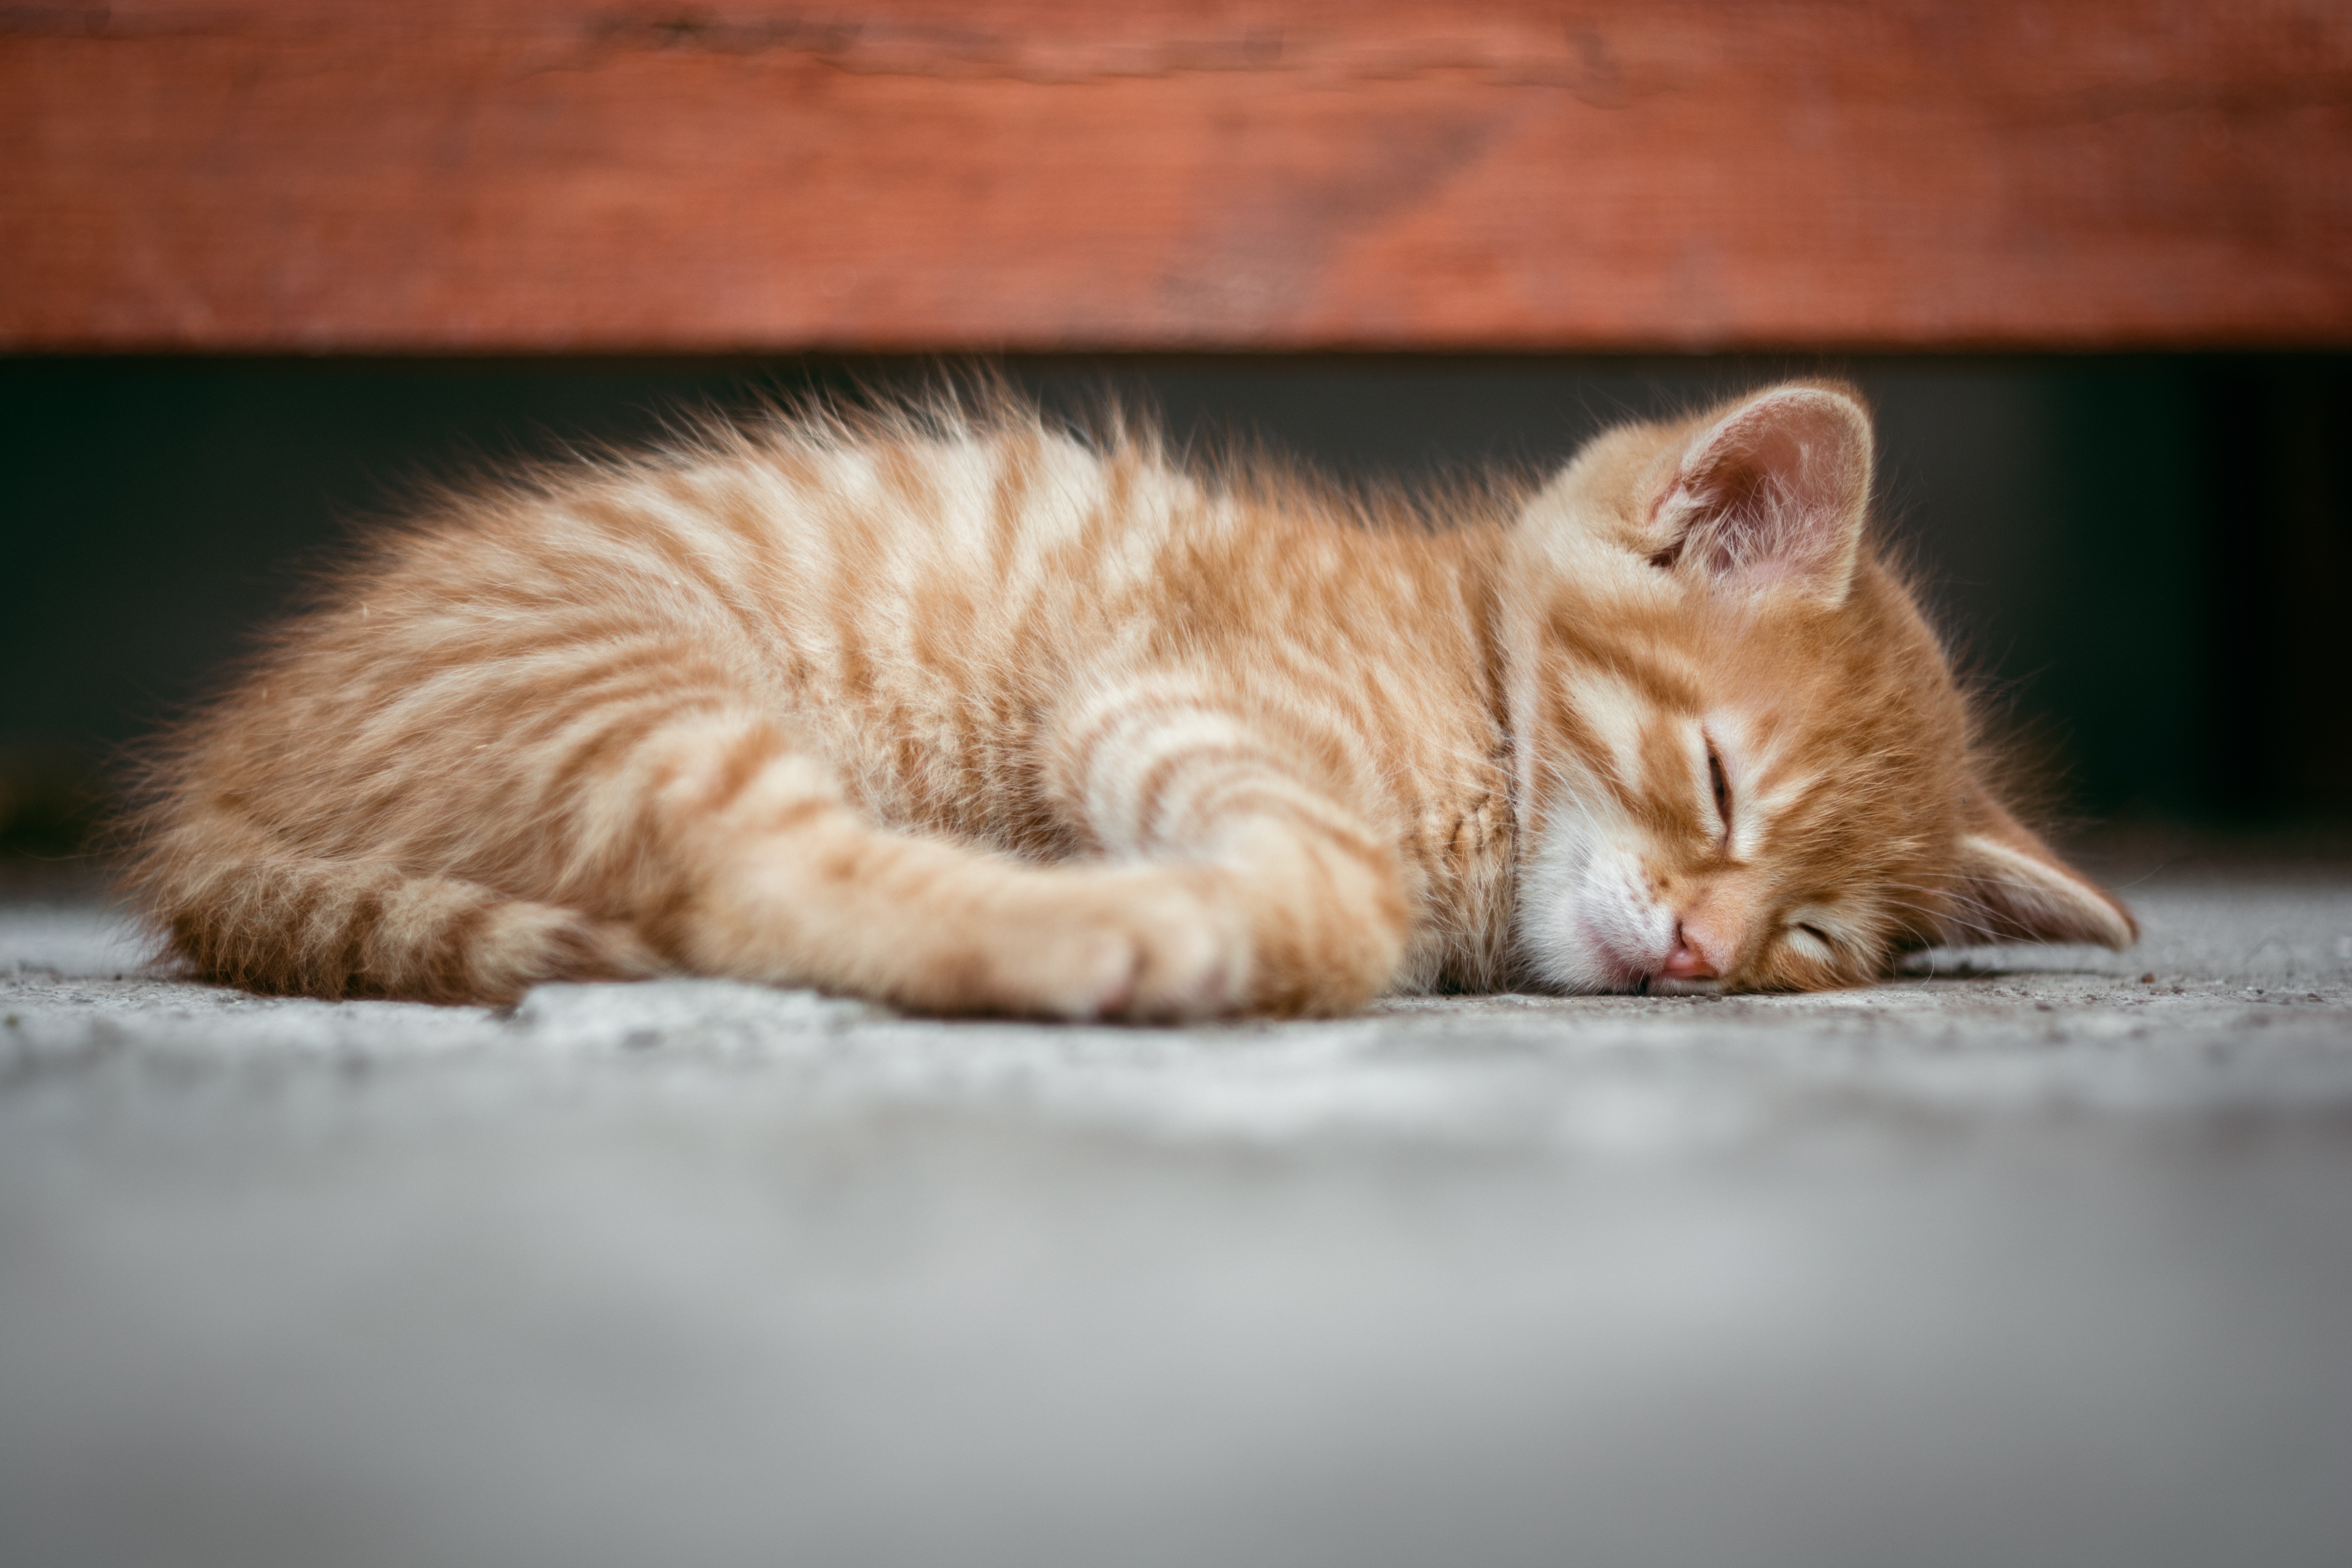 Odysseus London stemme Sygdomme hos katte | Læs alt på dyreportals katteblog